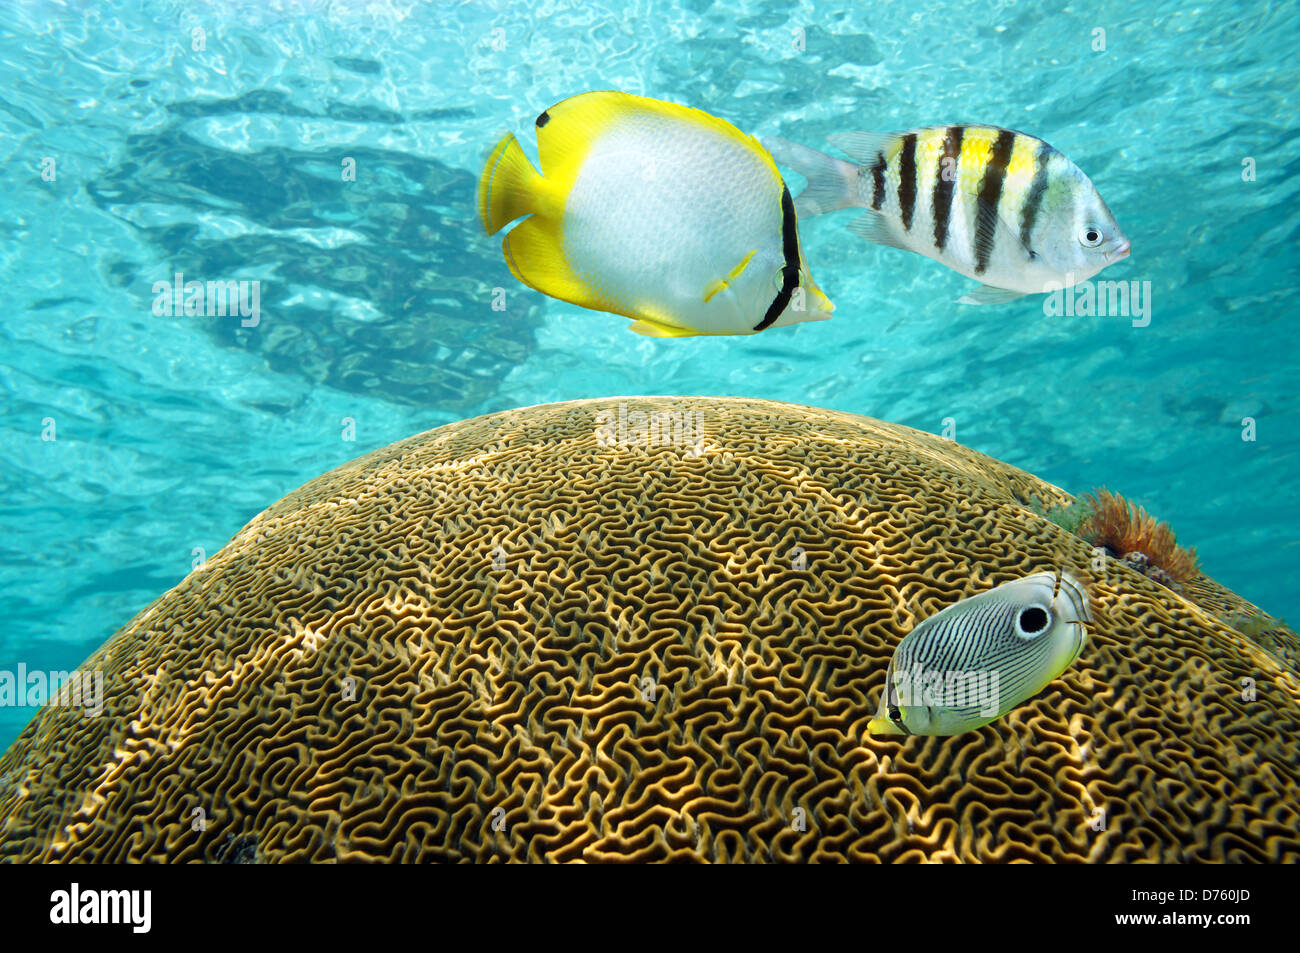 Underwater peces tropicales por encima de coral cerebro con superficie de agua de fondo, mar Caribe Foto de stock